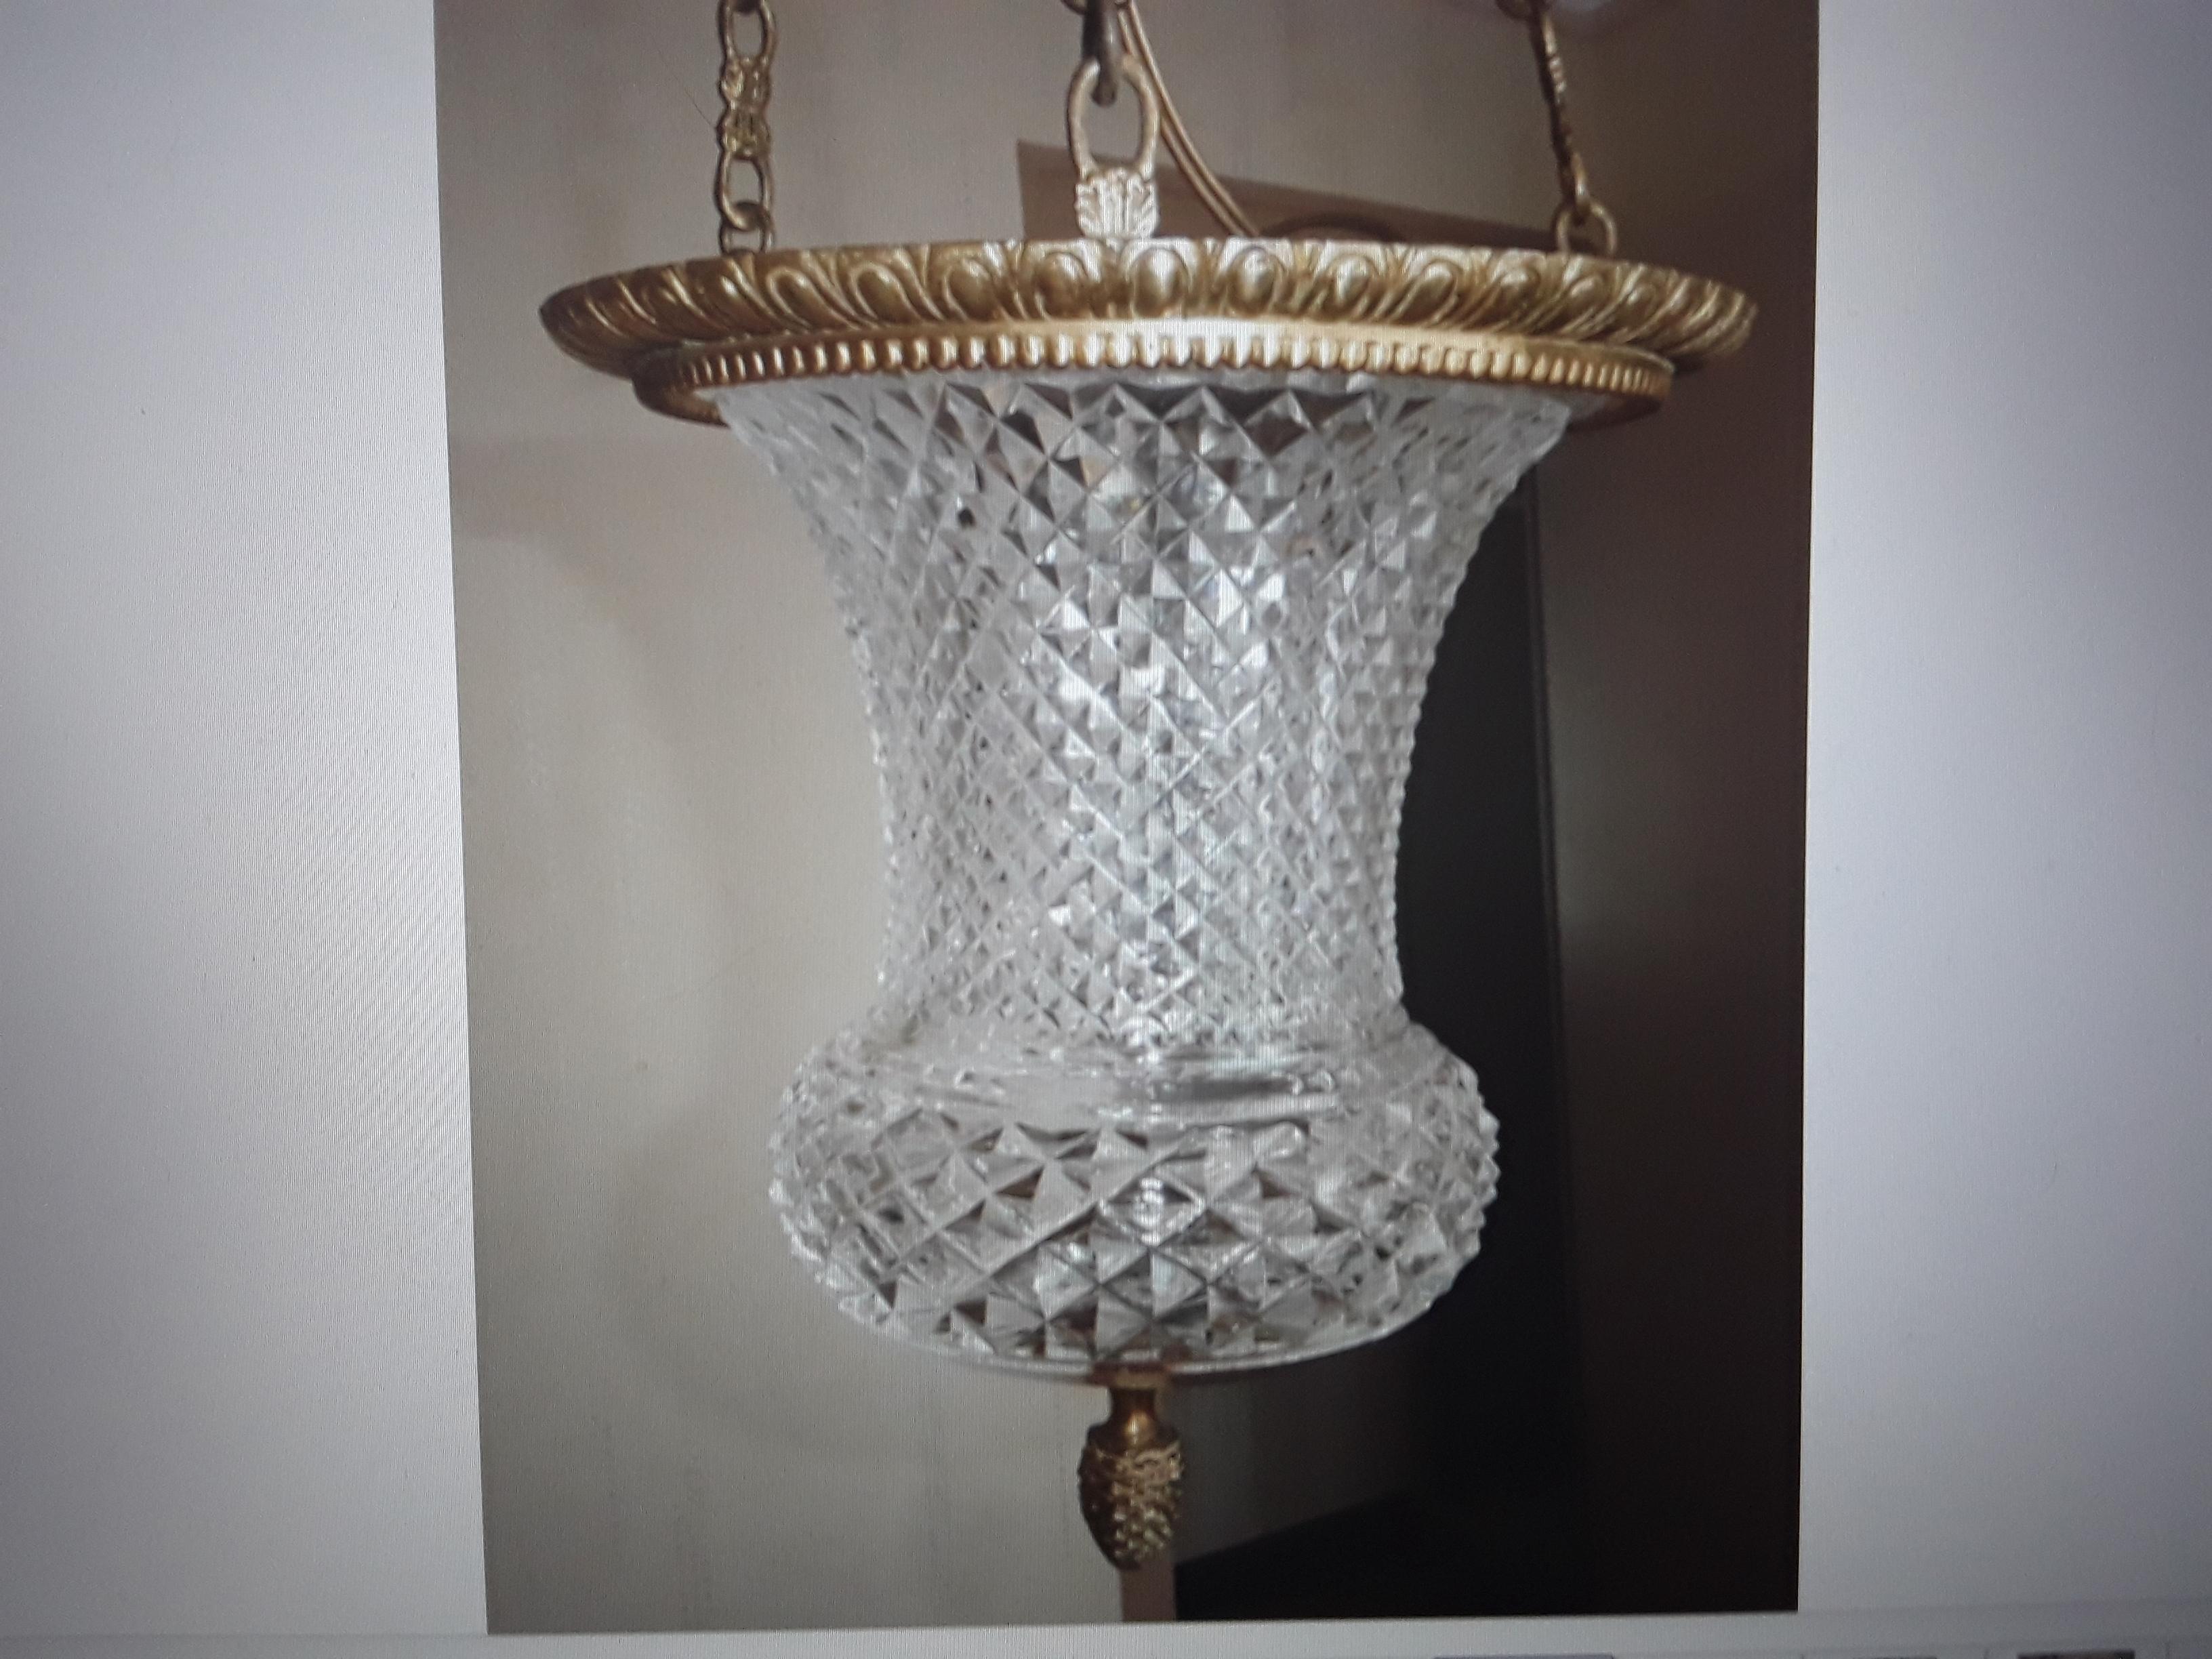 Lanterne en cristal taillé de style Louis XVI de Baccarat, datant du 19ème siècle. Encadrement en bronze doré avec section supérieure en cristal taillé. Cette lanterne est extraordinaire. Très bon état.